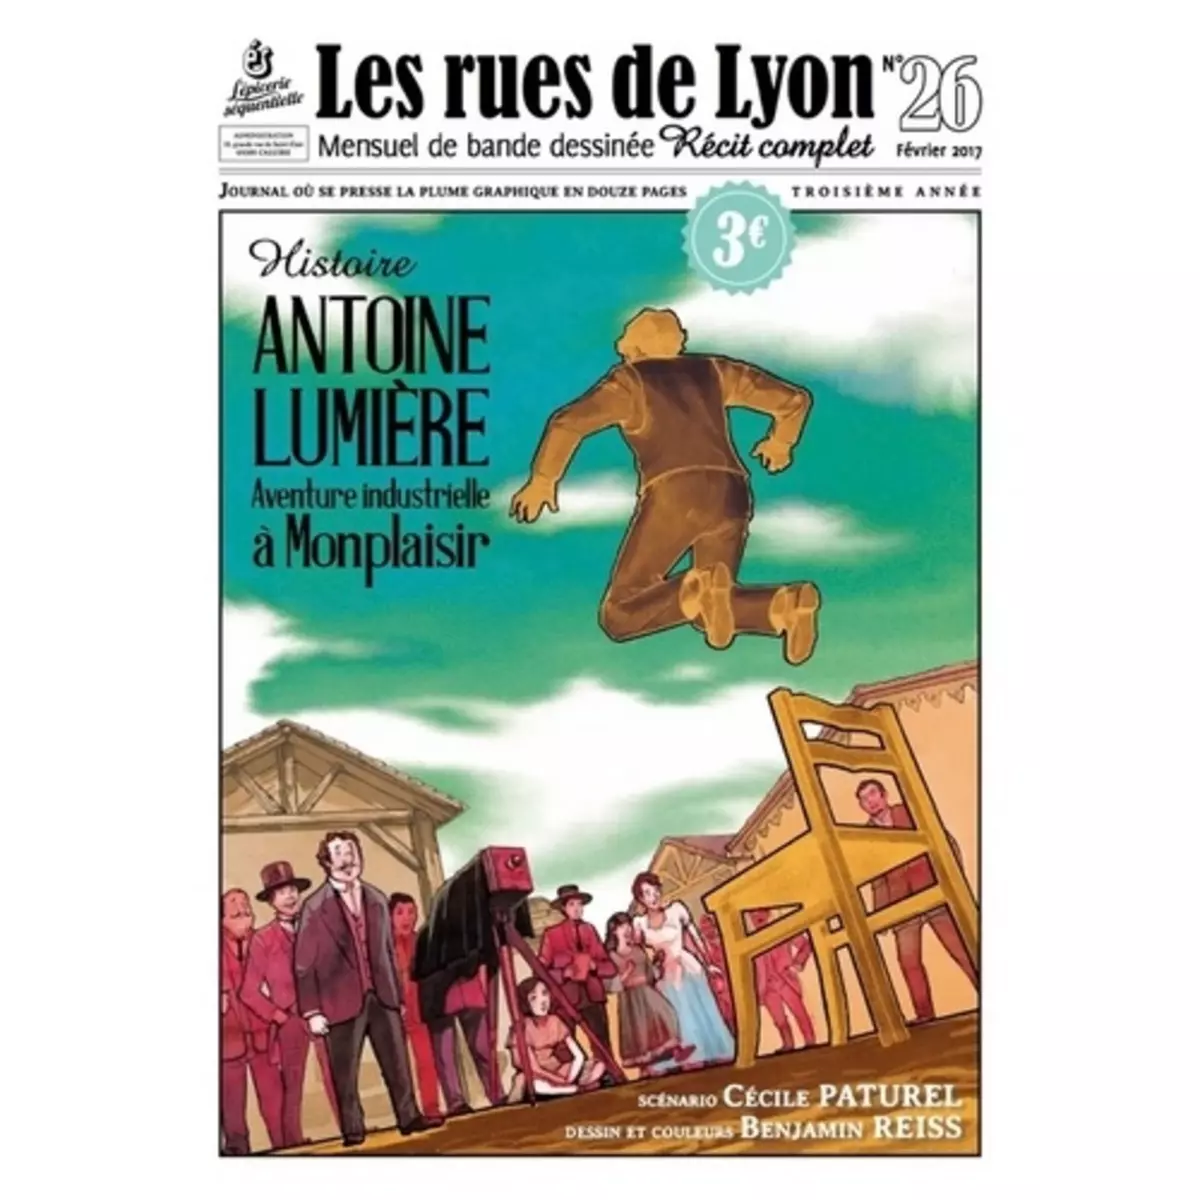  LES RUES DE LYON N° 26 : ANTOINE LUMIERE. AVENTURE INDUSTRIEL A MONPLAISIR, Paturel Cécile